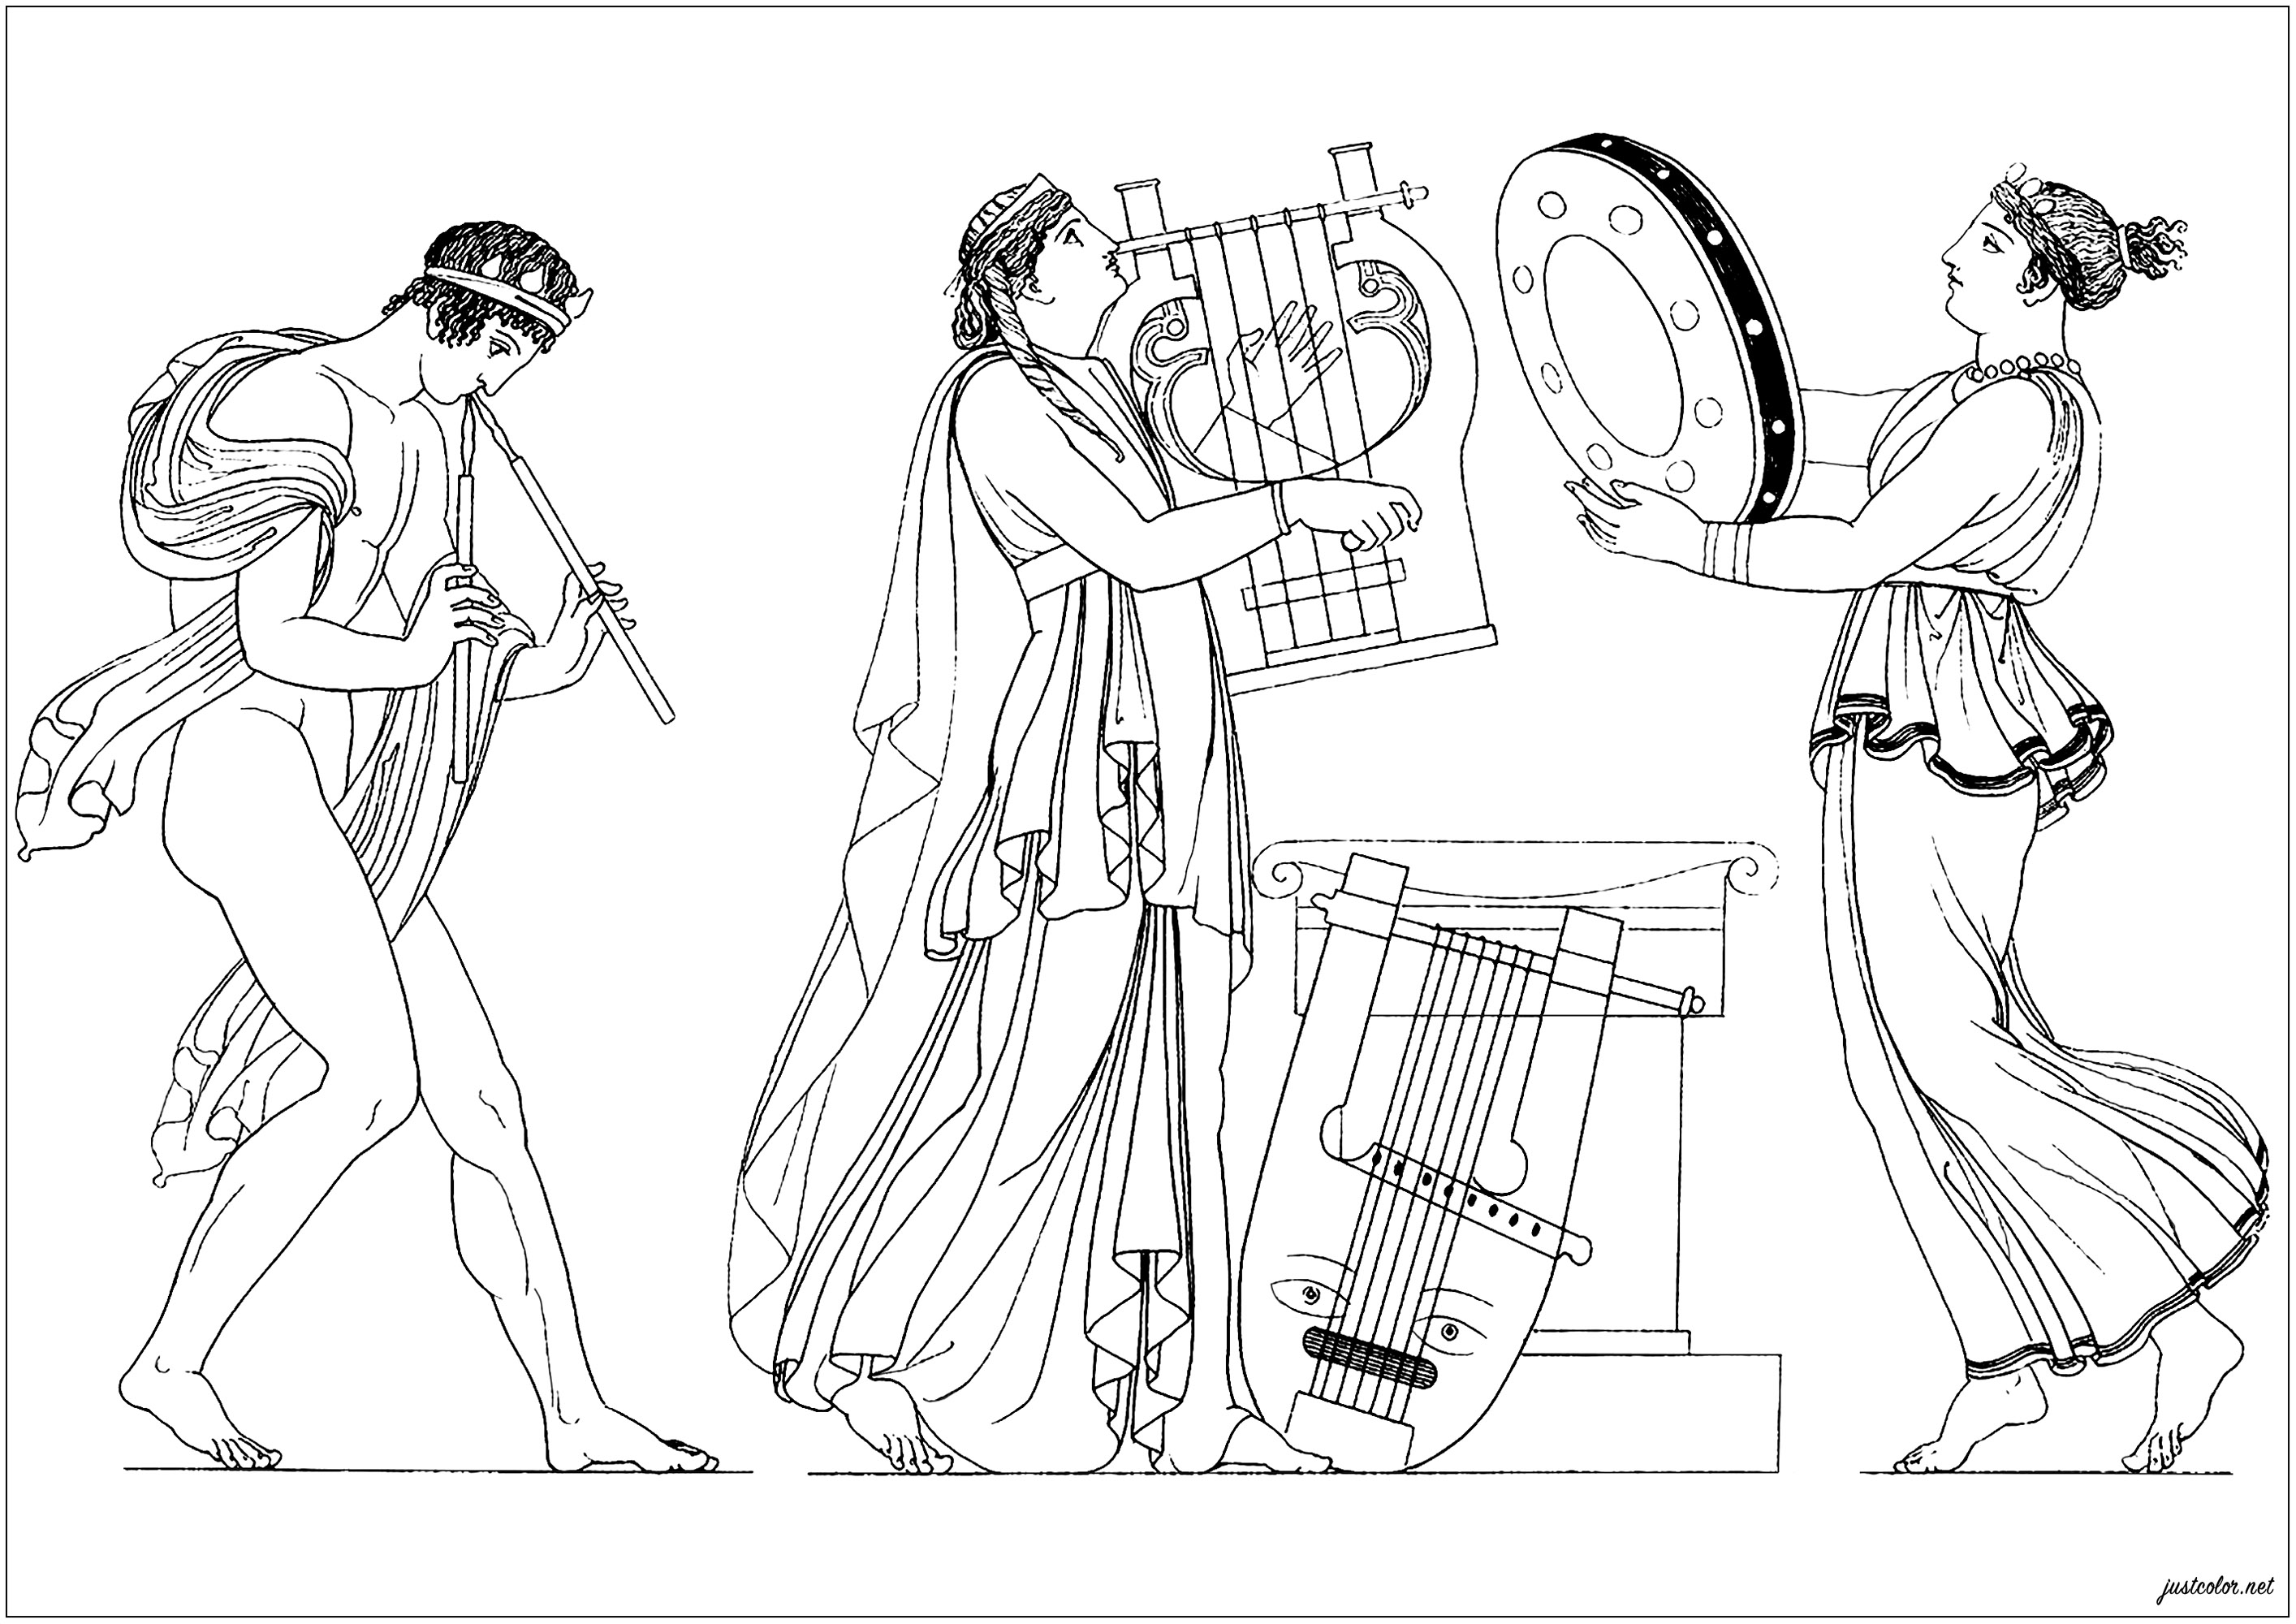 Musiciens grecs de l'époque antique.Un coloriage créé à partir d'une illustration de 'The Egyptian, Grecian and Roman costumes' par Thomas Baxter (1782–1821)